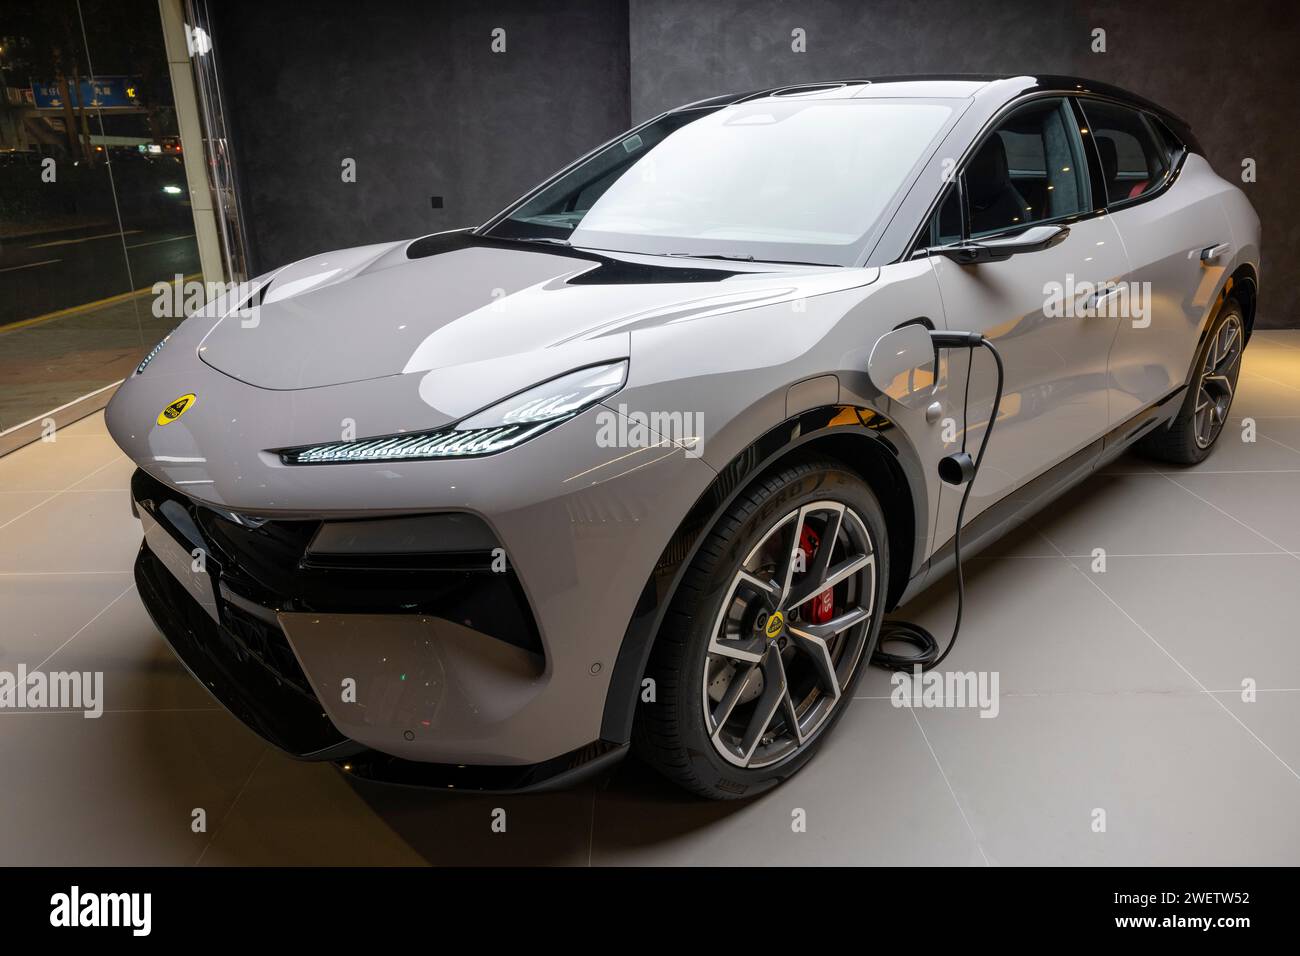 New Electirc cars made by Lotus, Hong Kong, China. Stock Photo